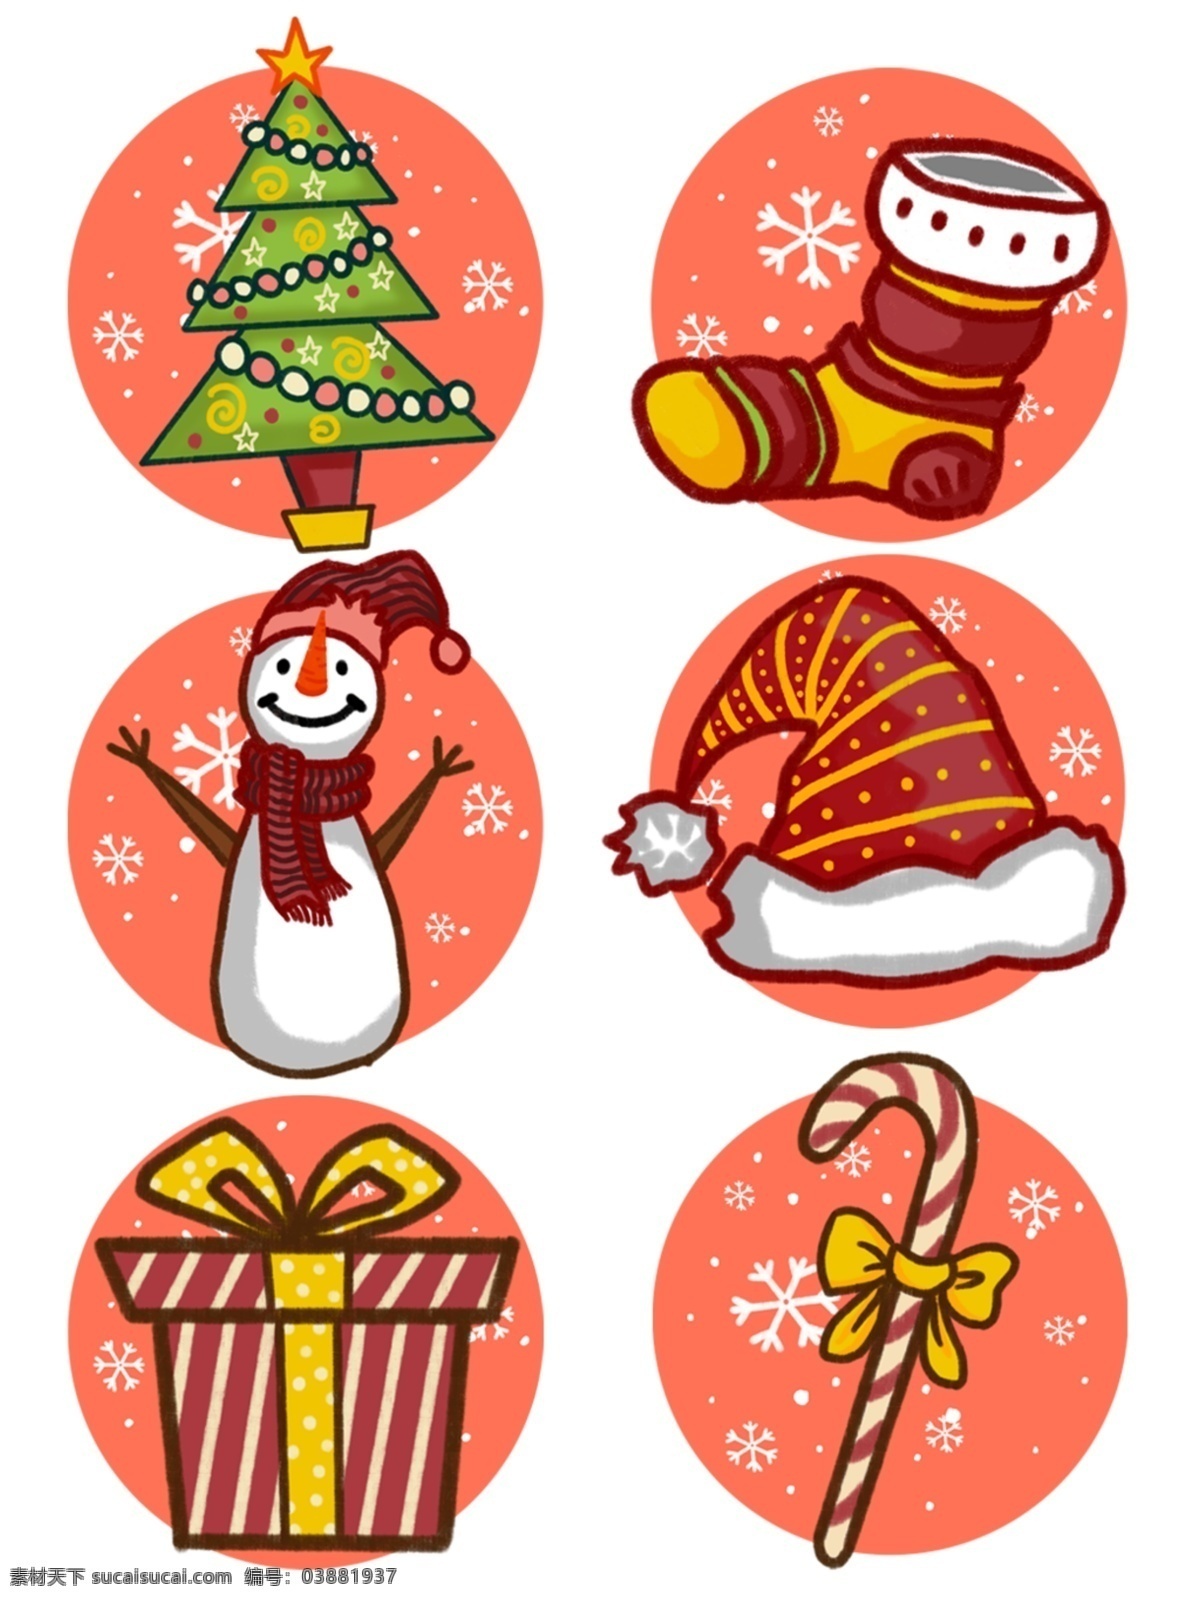 原创 手绘 风 插画 圣诞节 冬天 礼物 物品 元素 可爱 手绘风 板绘 圣诞树 袜子 雪人 圣诞帽 糖果 圣诞袜 雪花 雪球 卡通